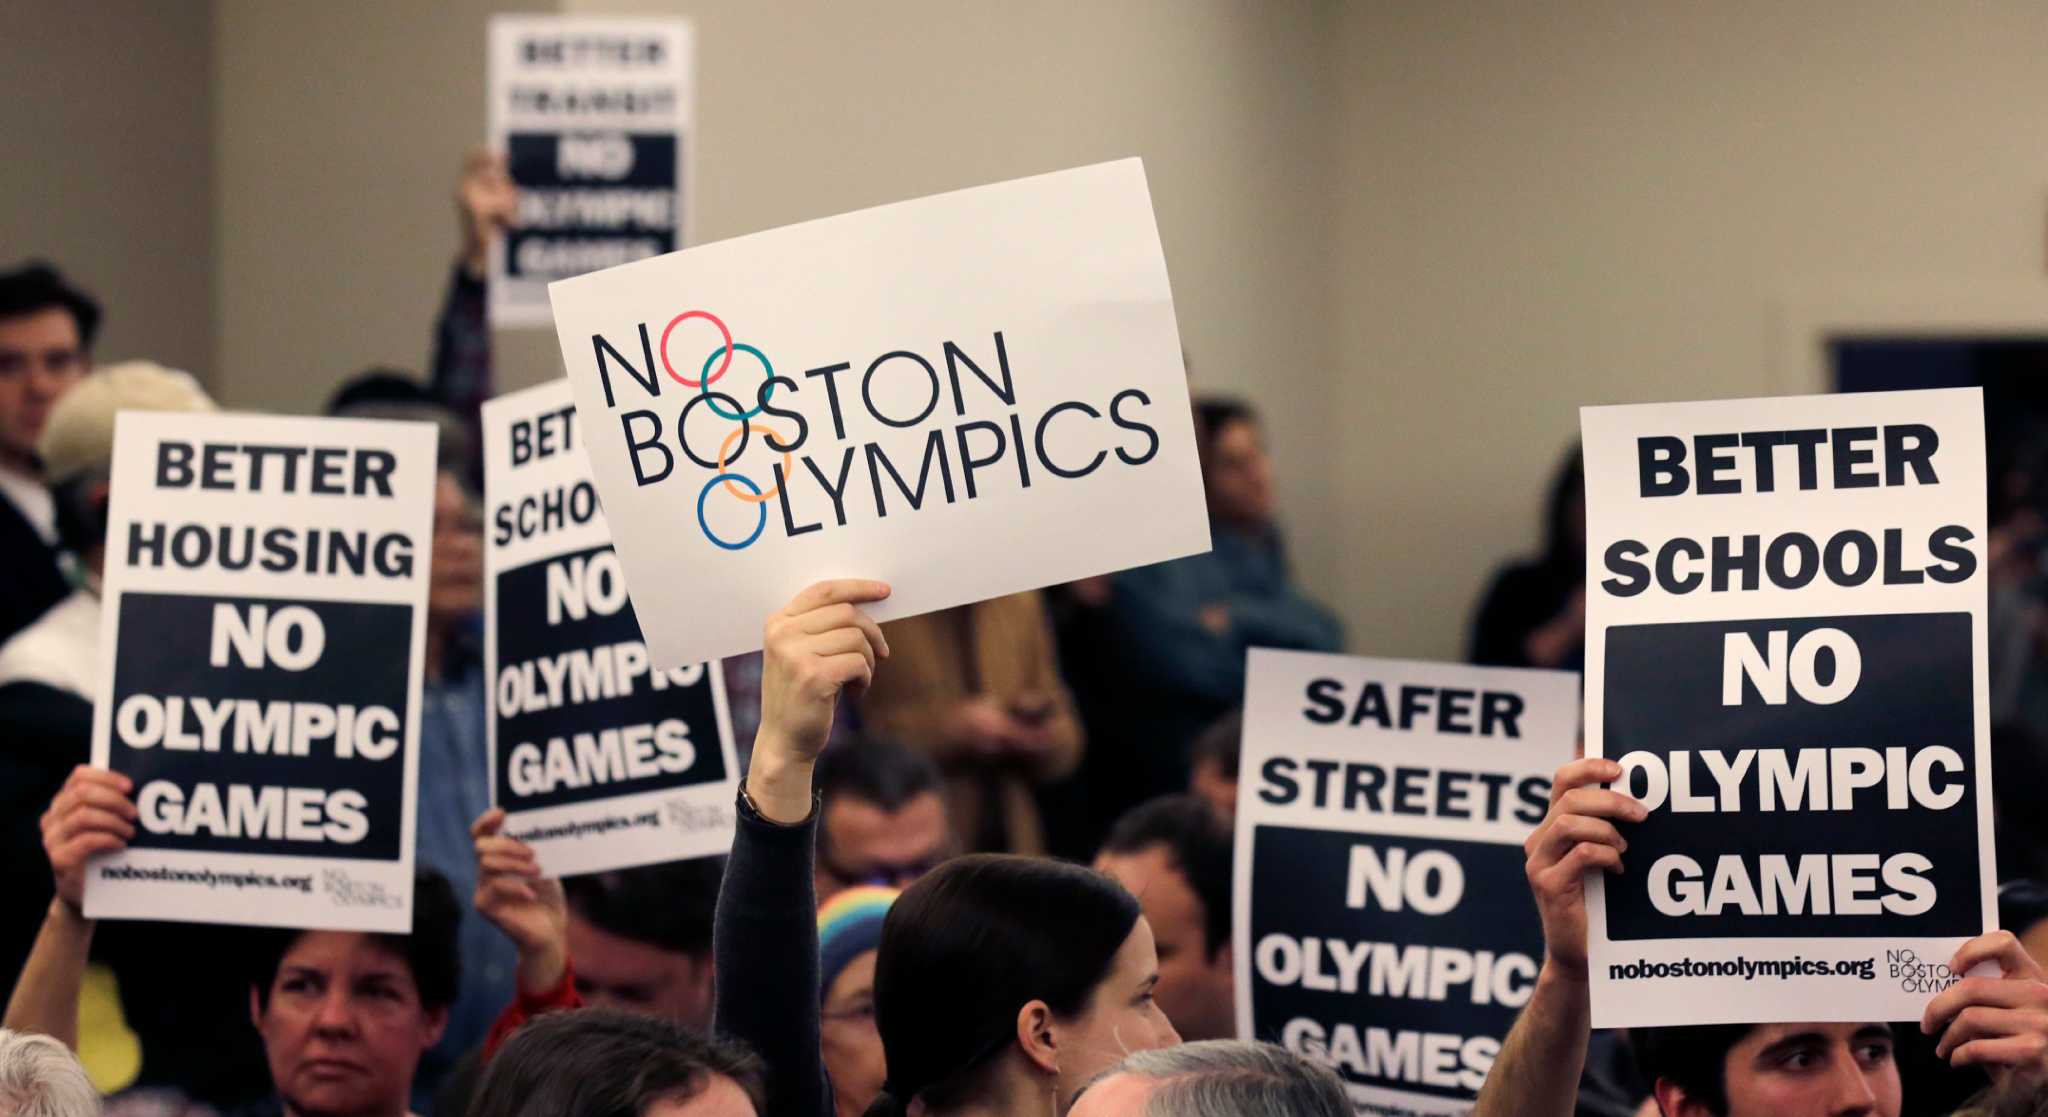 Boston's bid to host 2024 Olympics collapses